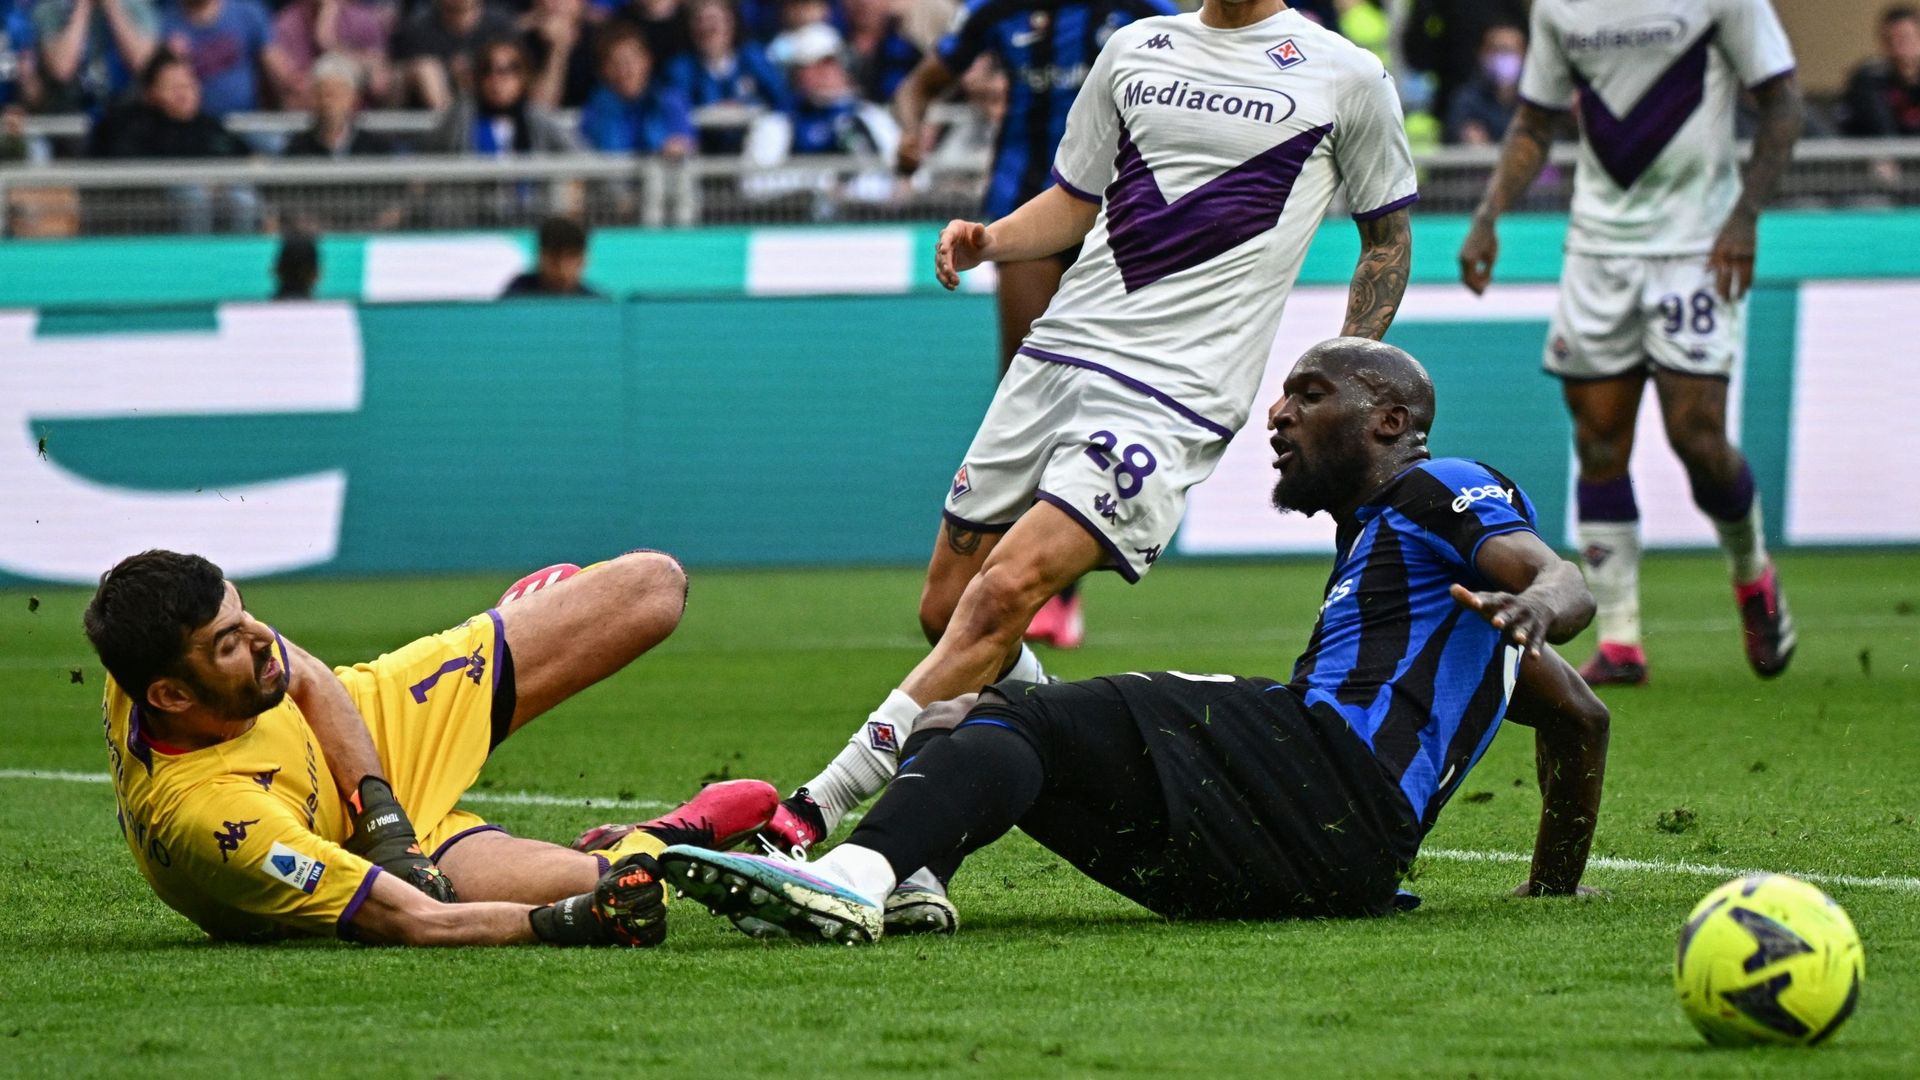 Serie A: Inter fall against Fiorentina, Romelu Lukaku misses a big opportunity